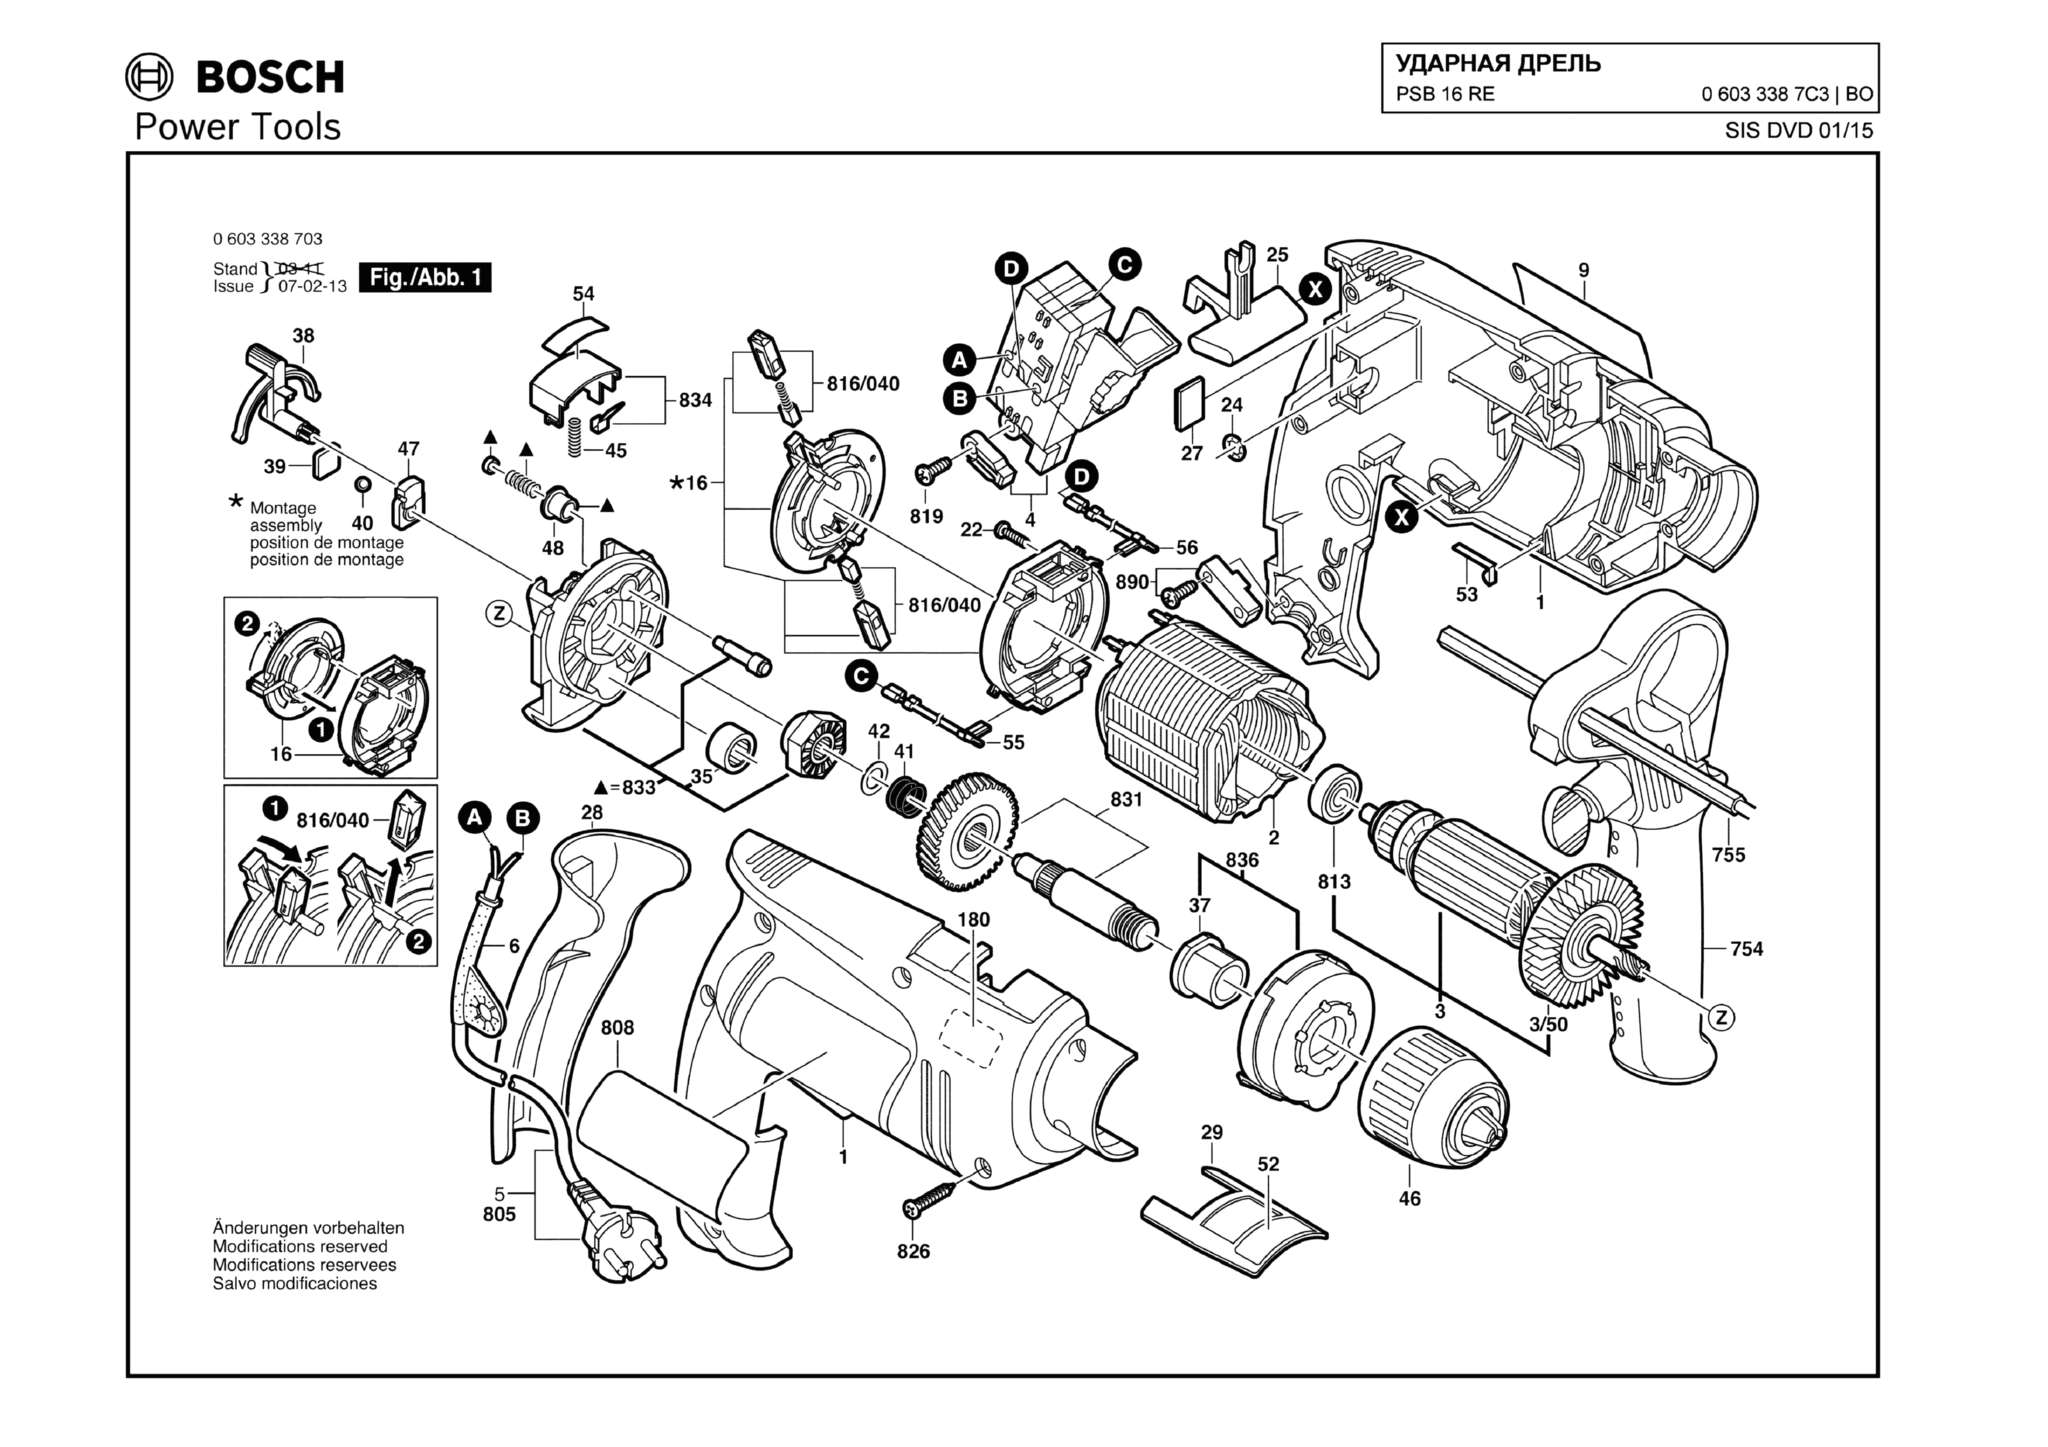 Запчасти, схема и деталировка Bosch PSB 16 RE (ТИП 06033387C3)